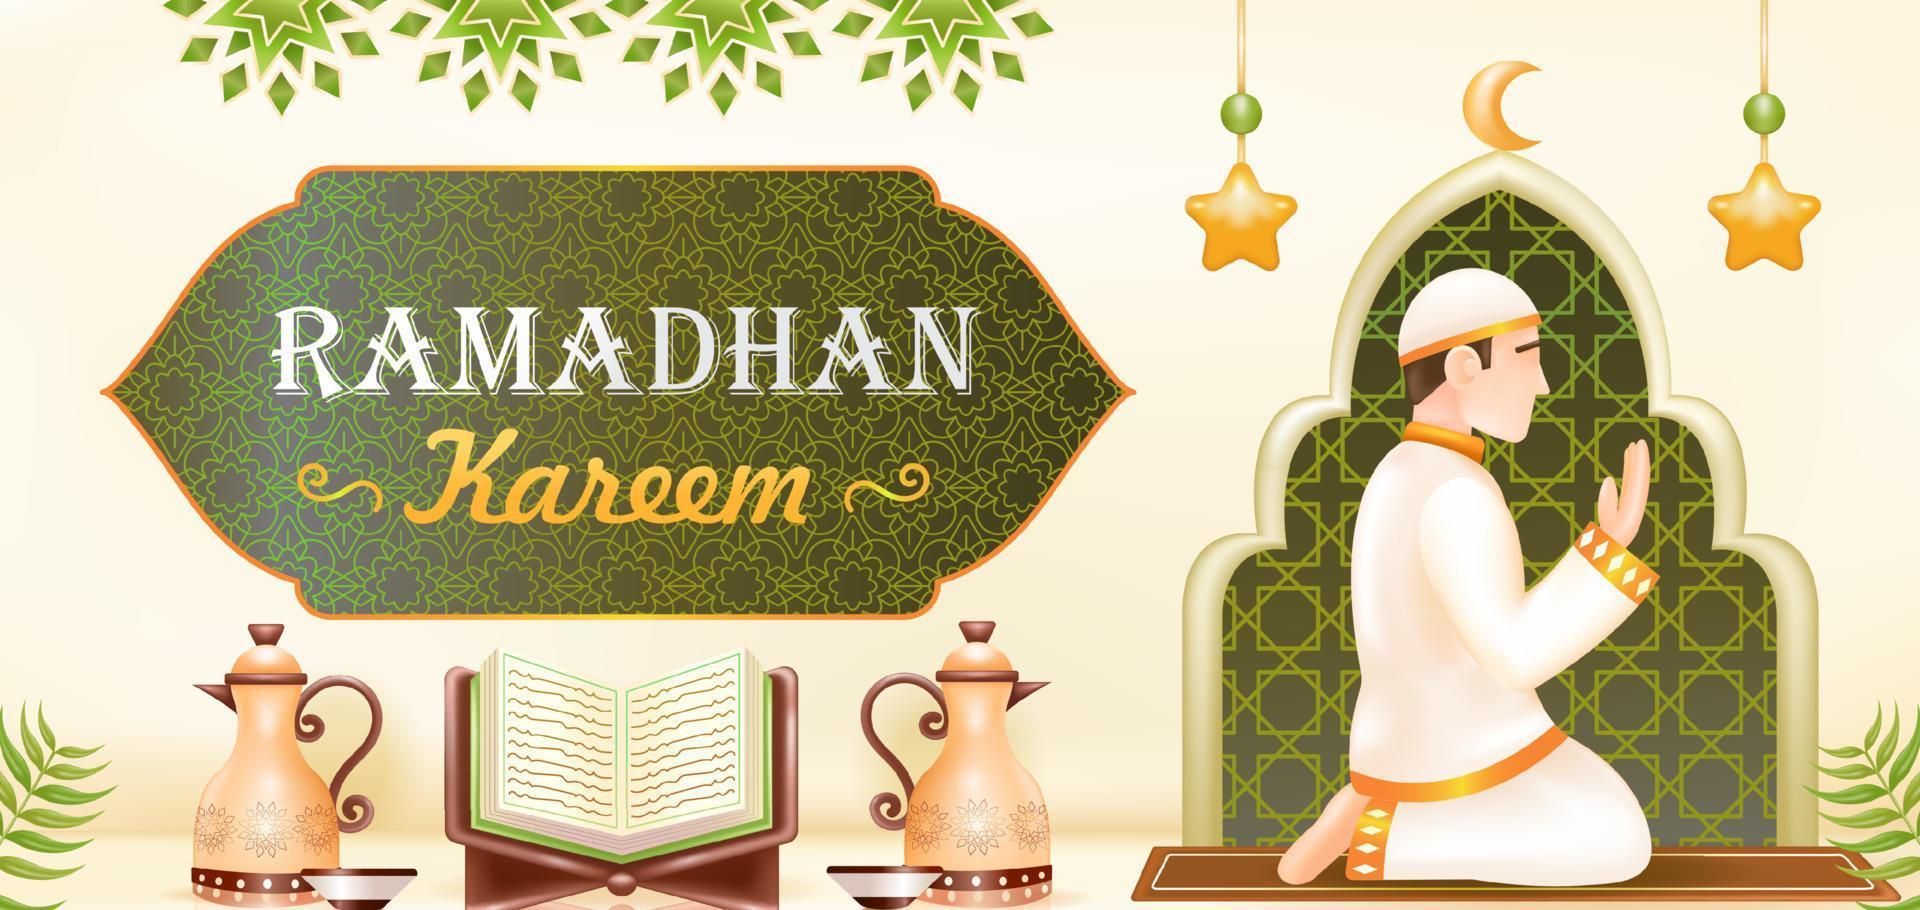 Ramadan kareem. 3d illustration of a mosque, lamp, drum, podium, and a man praying vector